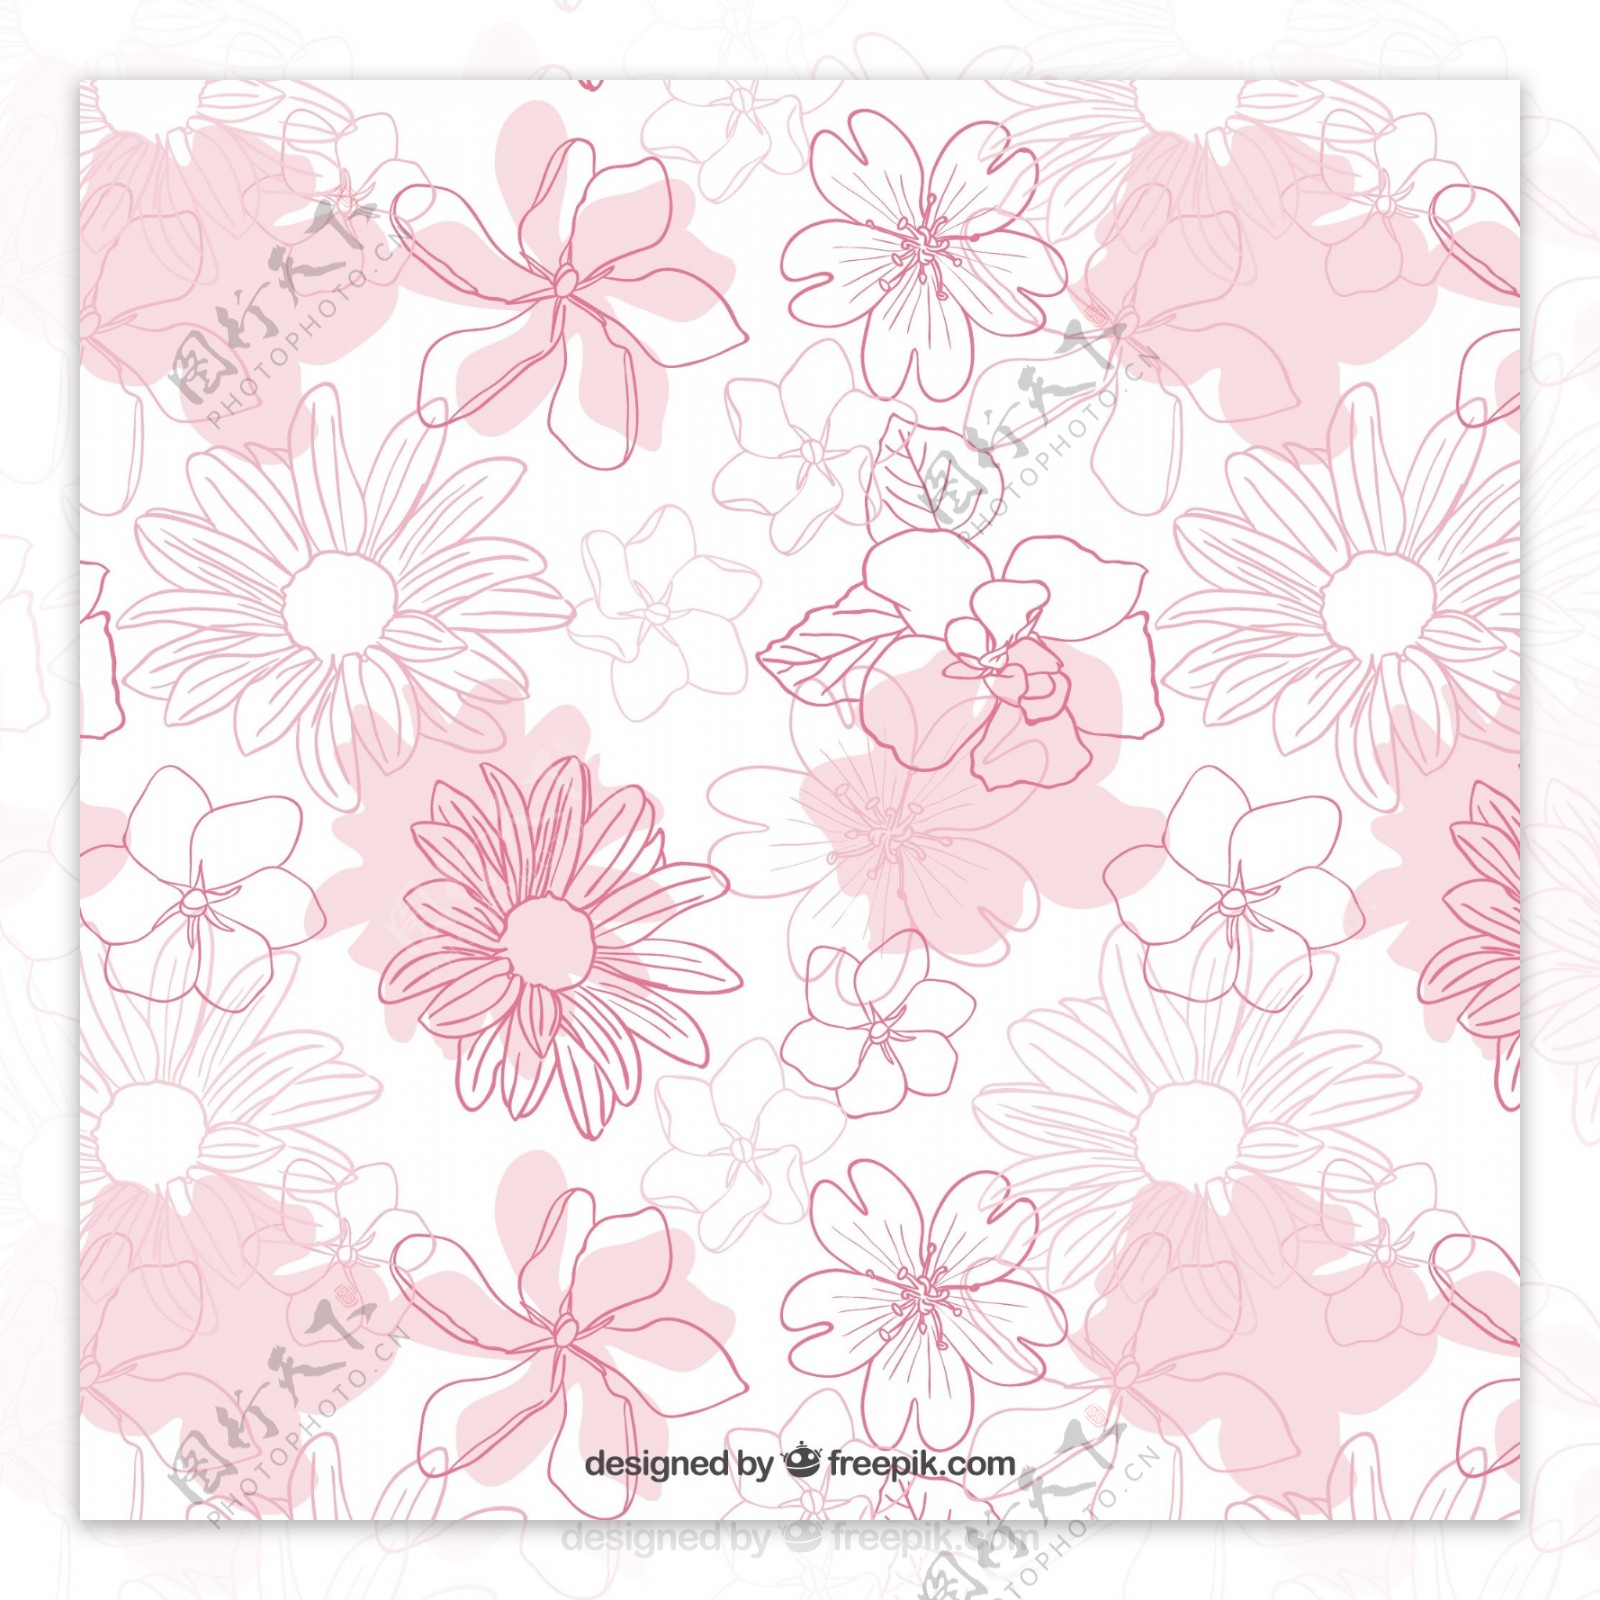 浅粉色手绘花卉背景图片